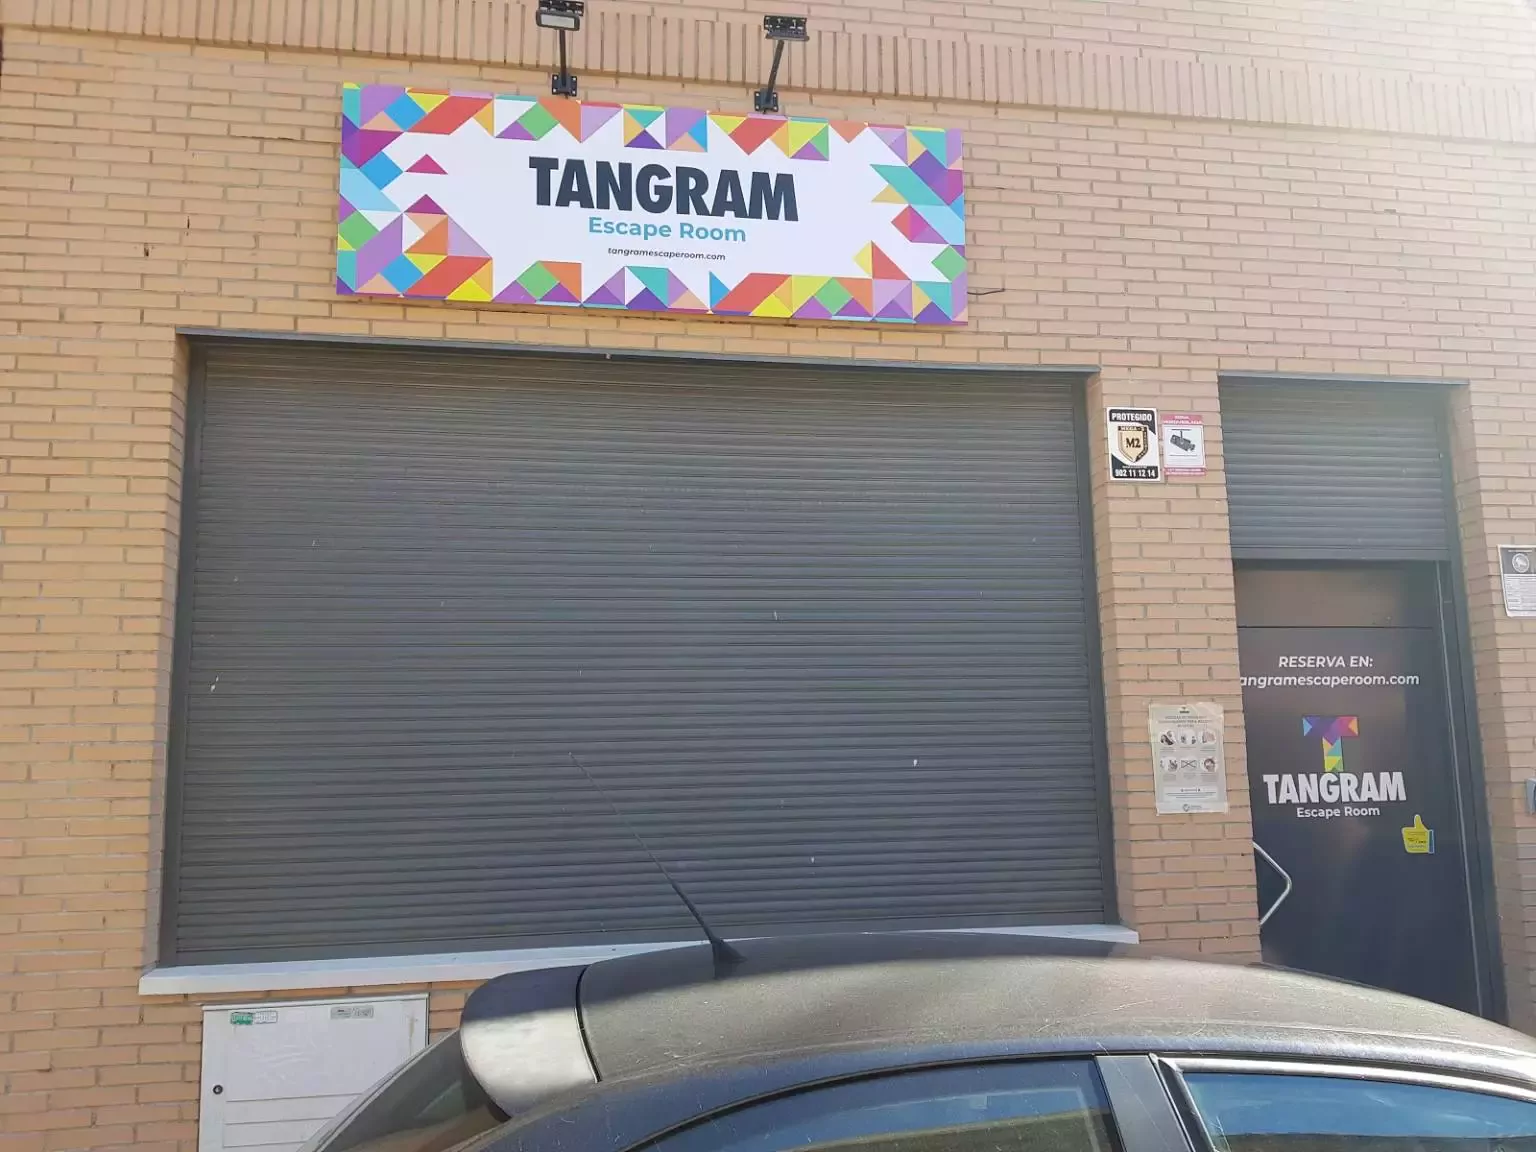 2. Tangram Escape Room